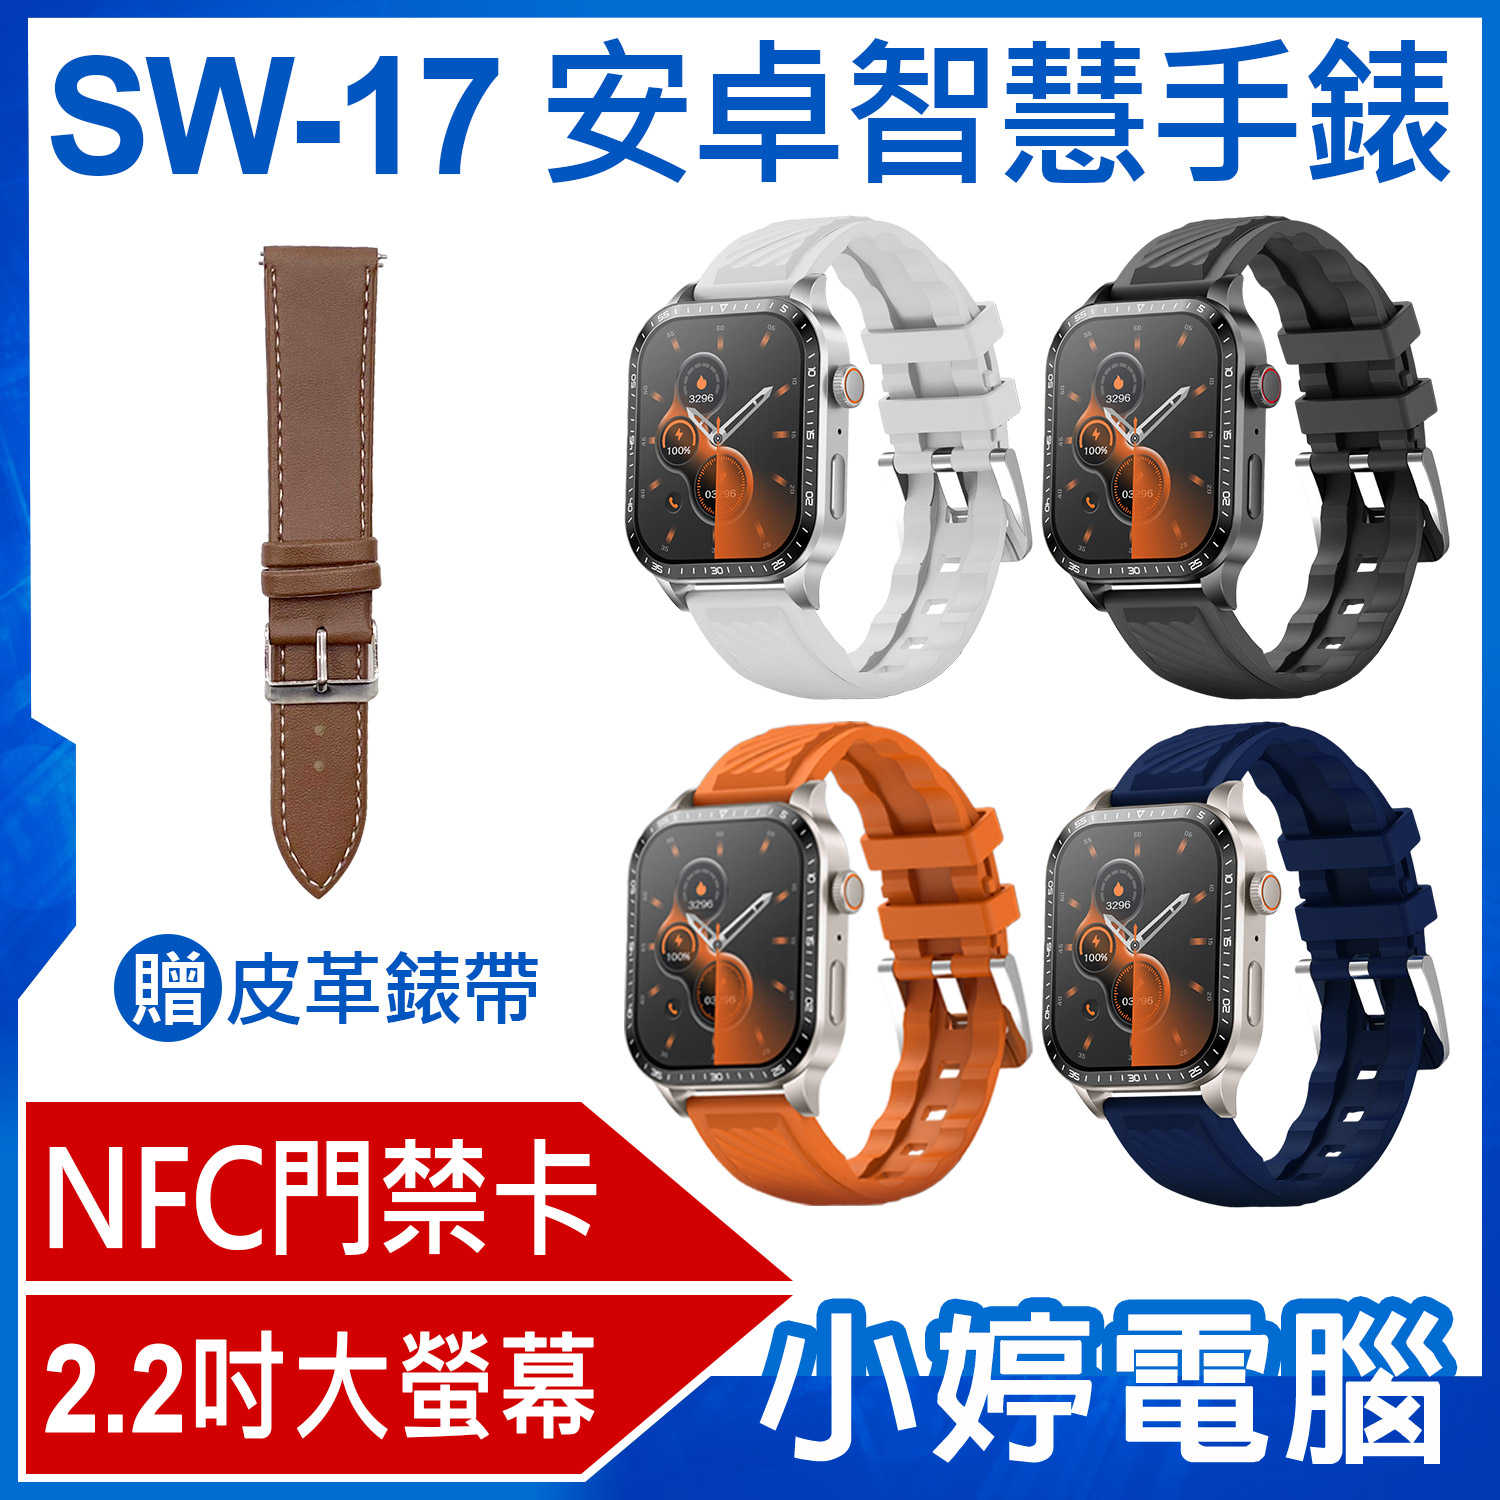 【小婷電腦】贈皮革錶帶 SW-17 安卓智慧手錶 2.2吋大螢幕 心率監測 IP67生活防水 門禁卡 藍芽通話